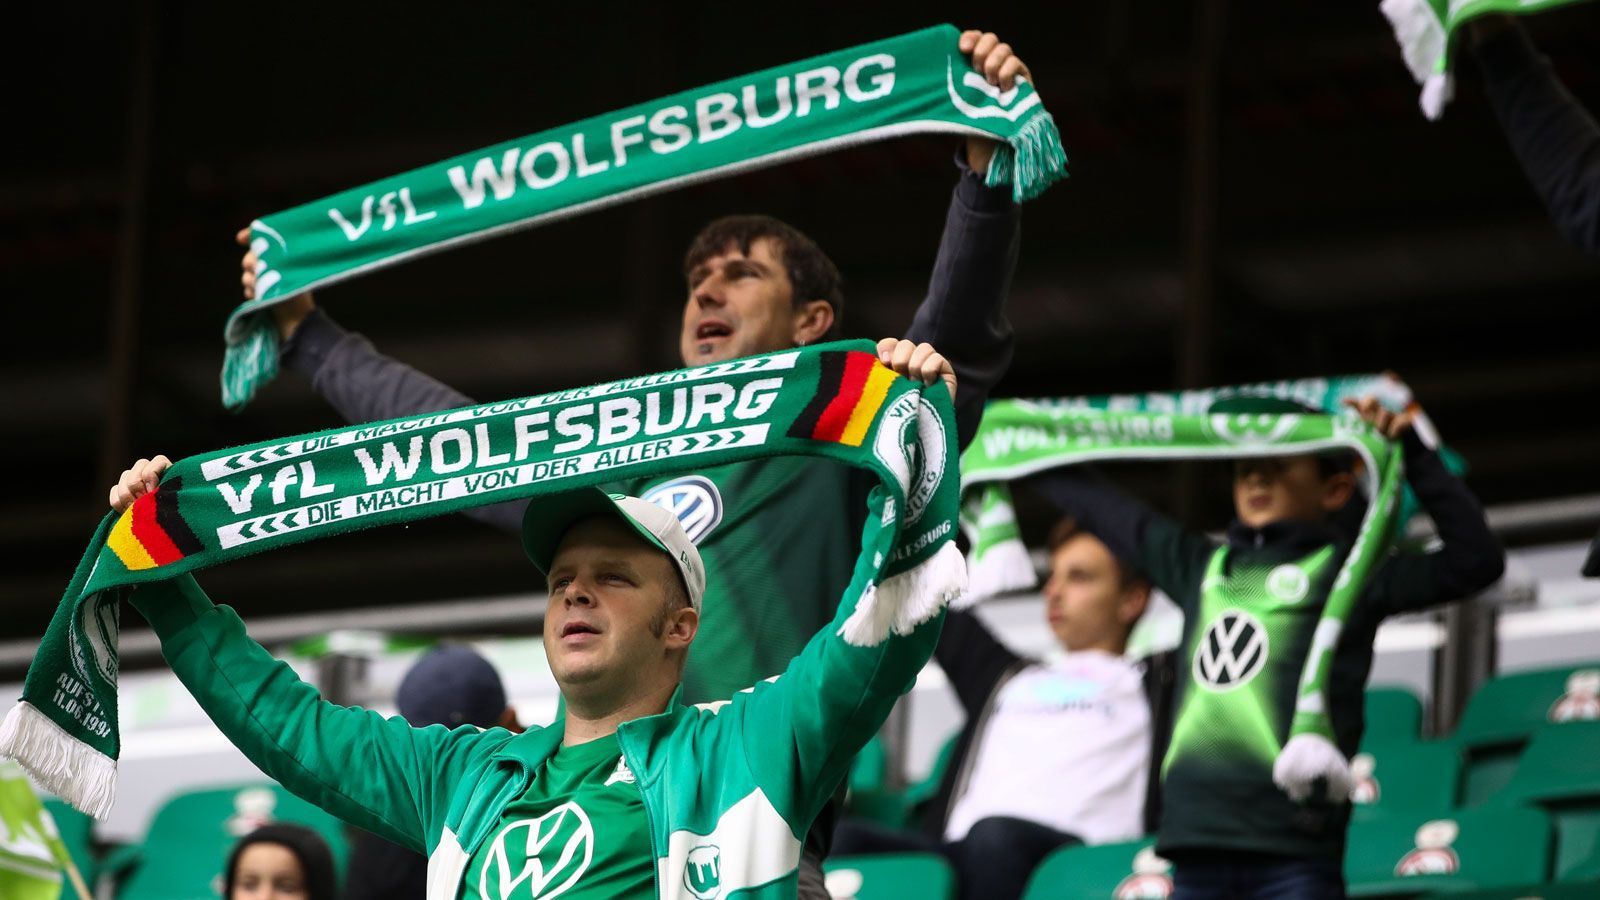 
                <strong>VfL Wolfsburg - Arminia Bielefeld</strong><br>
                 - Stadion: Volkswagen Arena - Kapazität: 30.000 - Zugelassene Zuschauer: 6.000 - 7-Tage-Inzidenz: 16,1
              